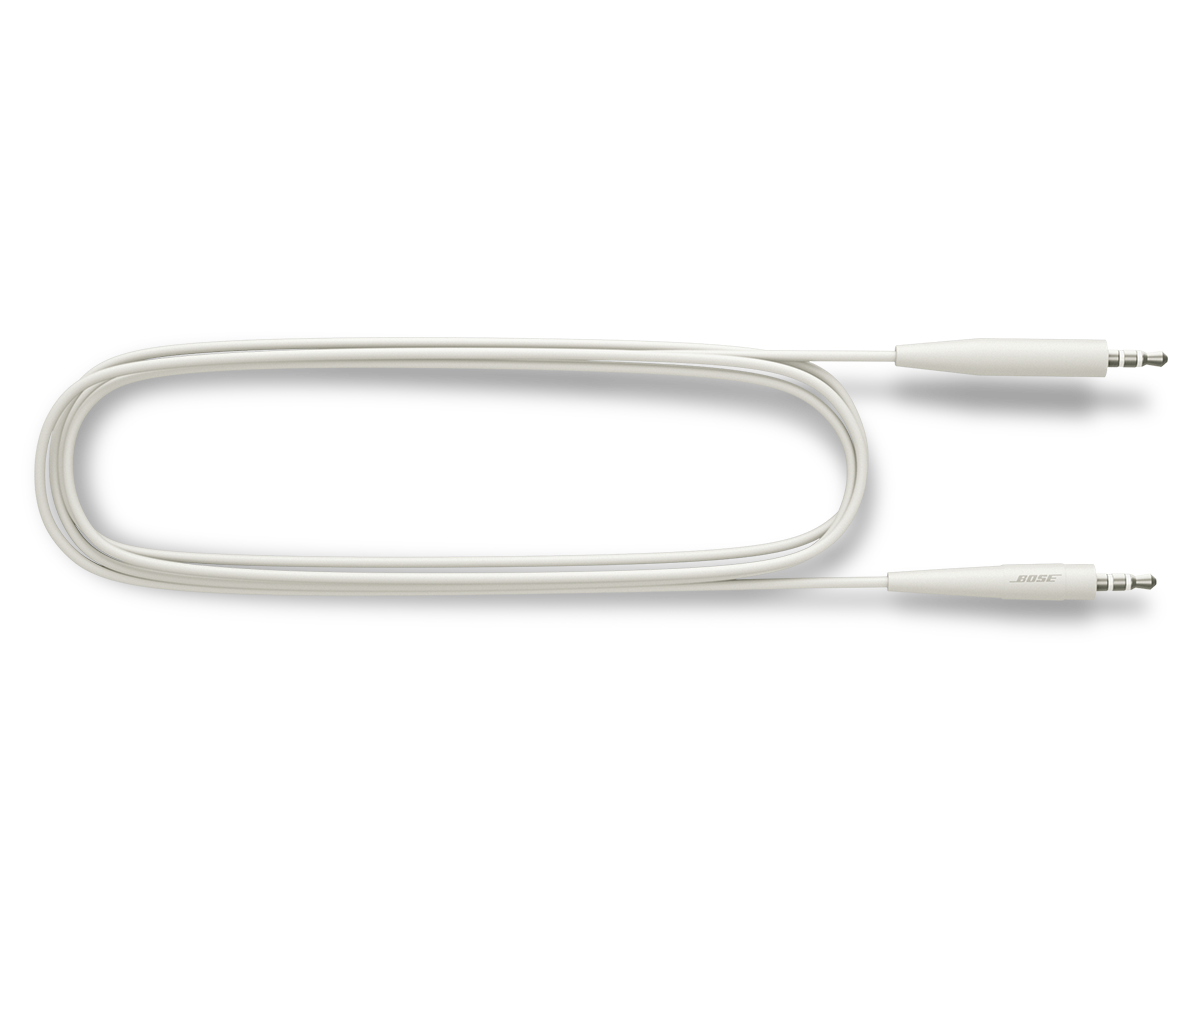 Auriculares intraurales Celter con conexión jack 3.5mm y bolsa